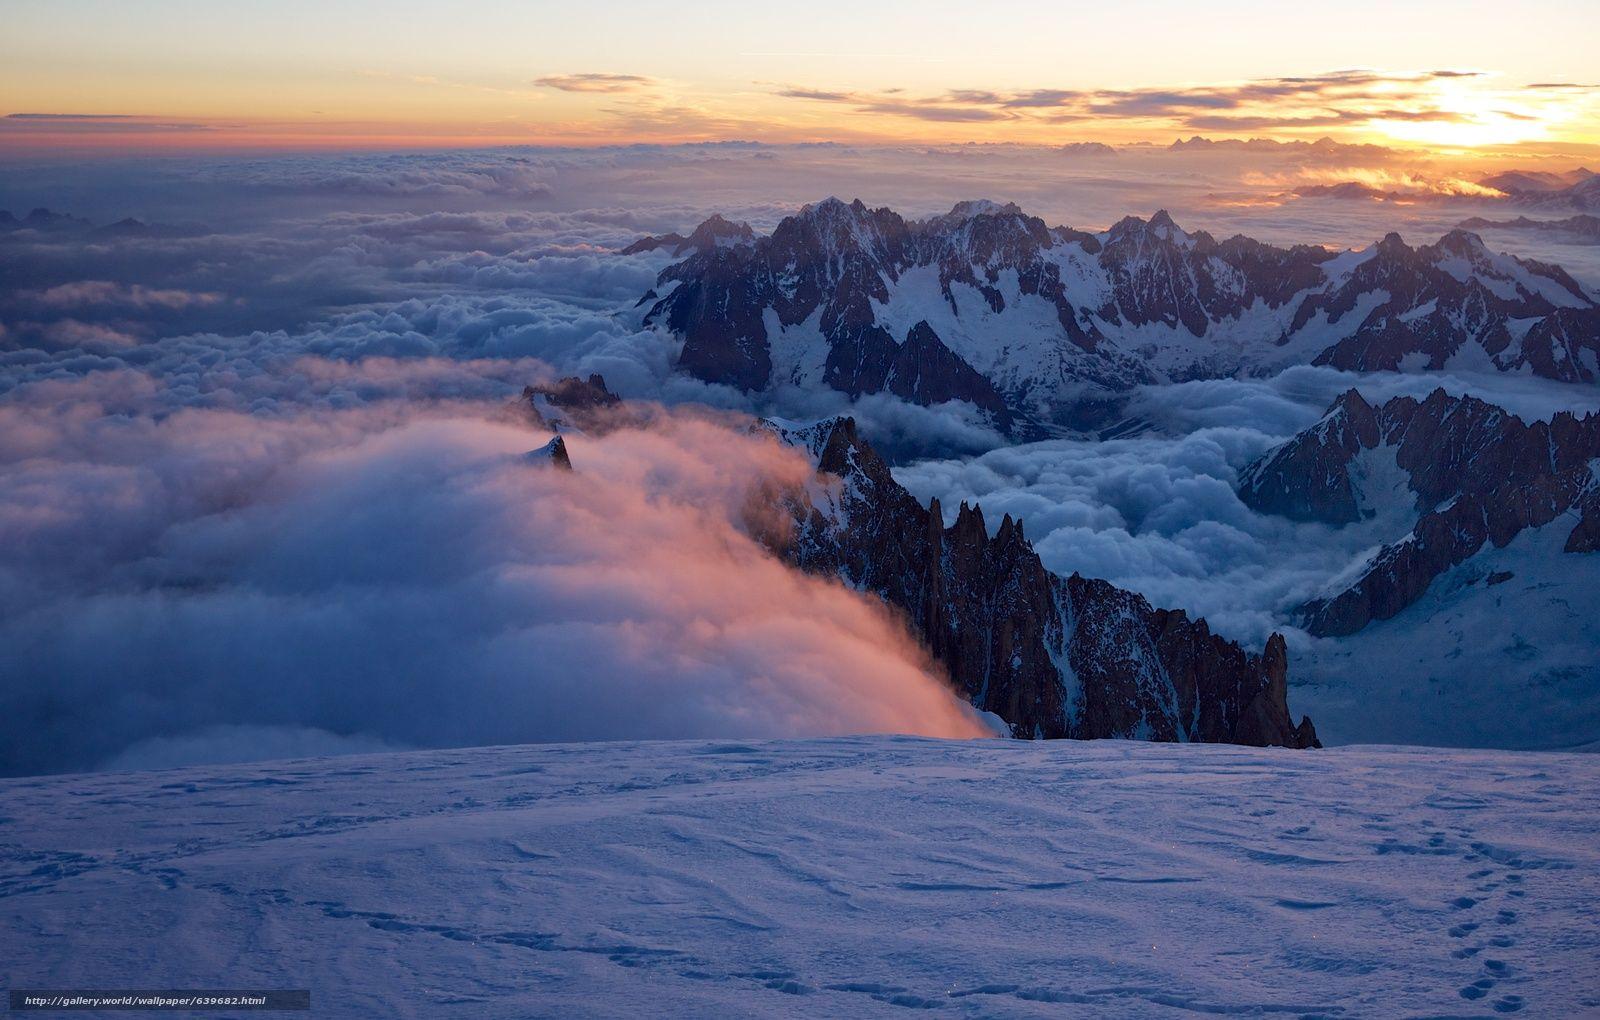 Download wallpaper Mont Blanc du Tacul, Aiguille du Midi, French